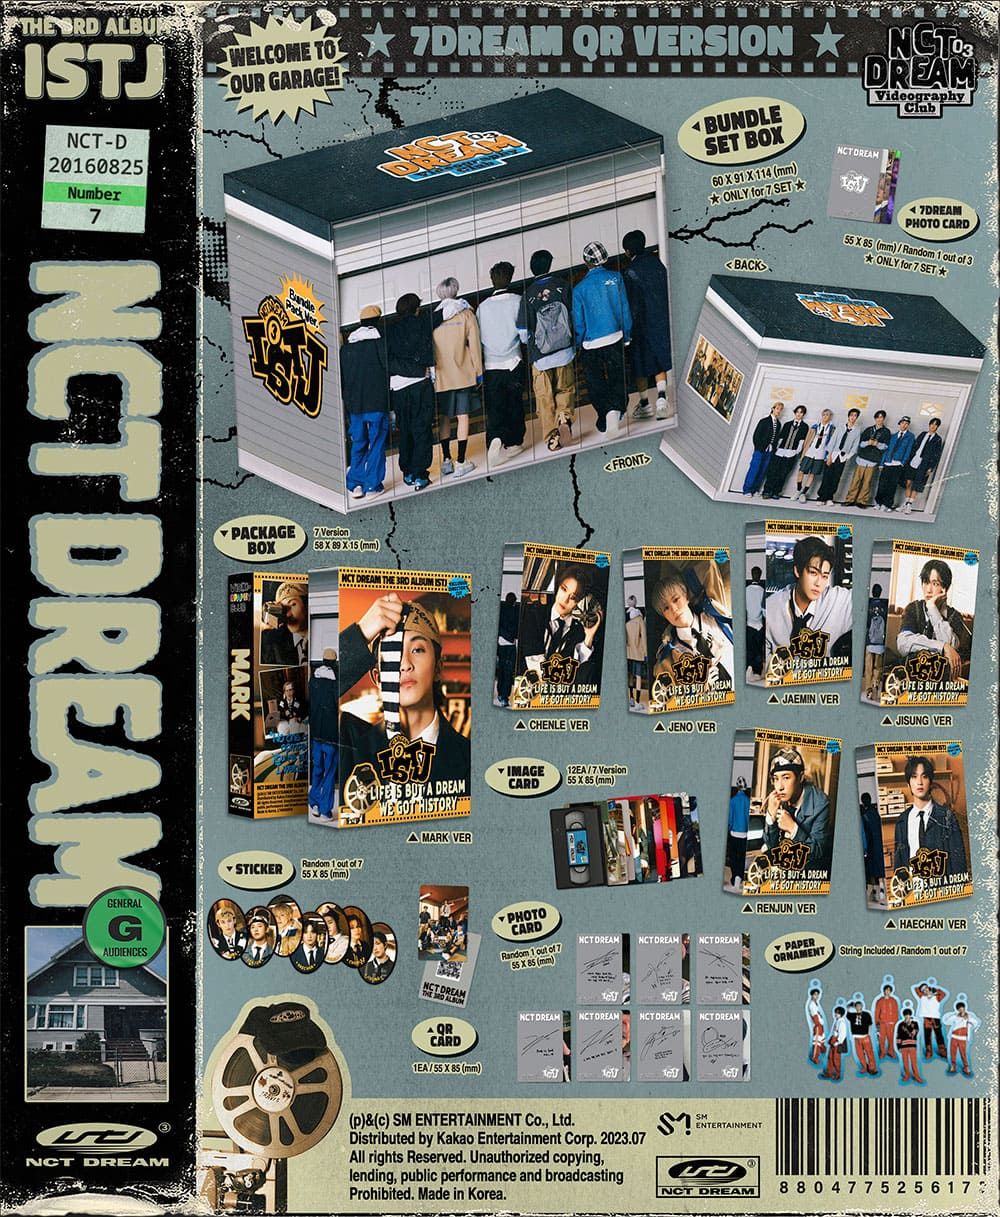 NCT DREAM - 3RD ALBUM [ISTJ] 7DREAM QR Ver.